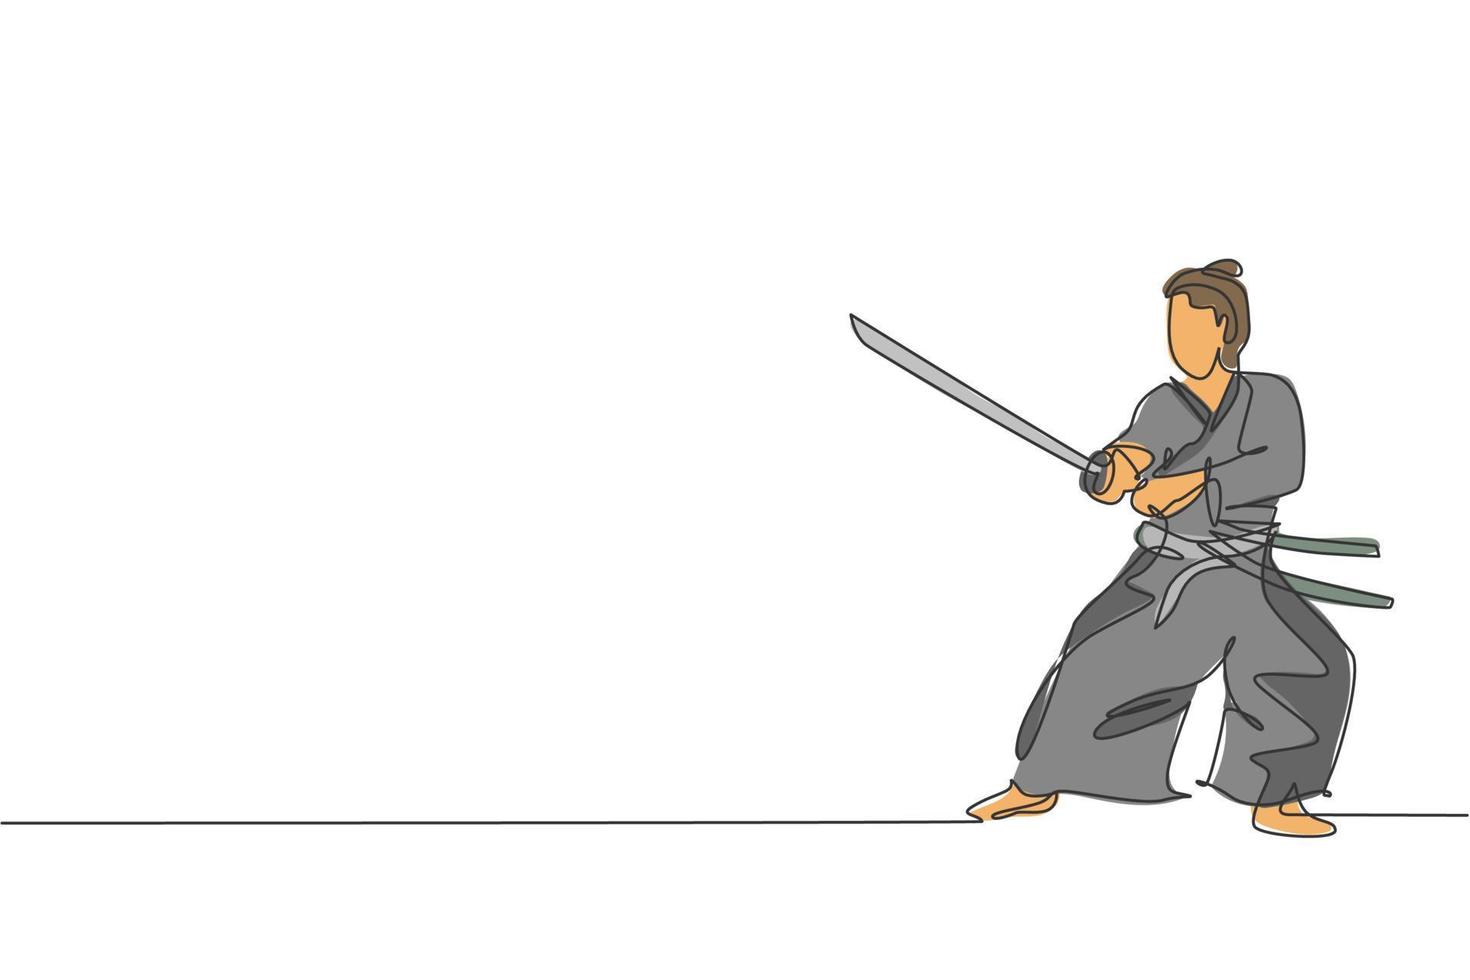 único desenho de linha contínua de jovem guerreiro samurai forte vestindo uniforme tradicional segurando a espada no festival. antigo conceito de soldado lutador. ilustração em vetor design de desenho de uma linha na moda